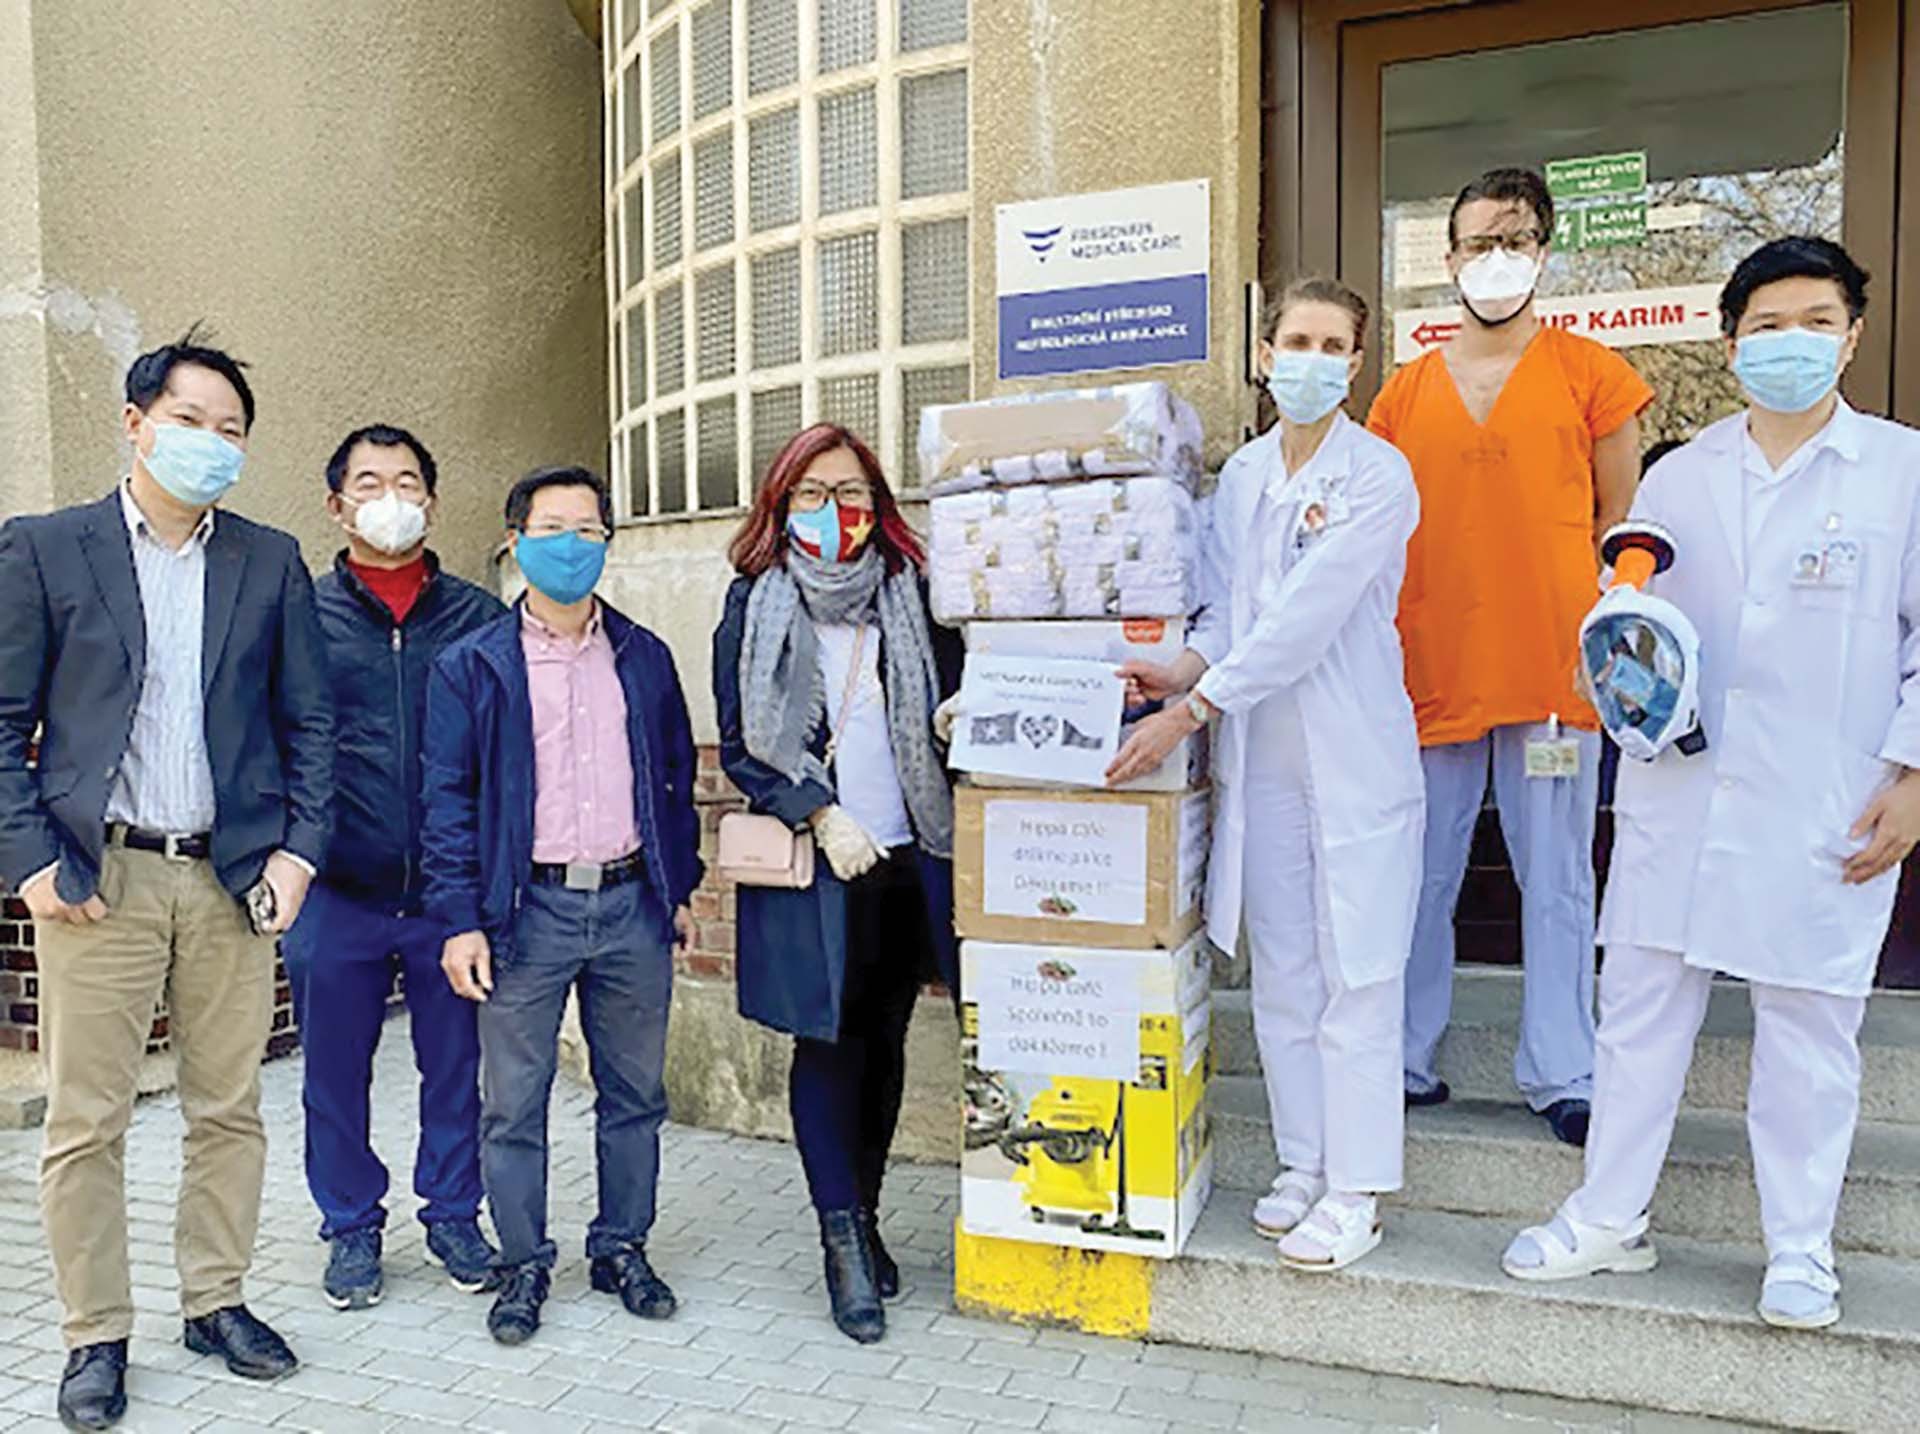 Cộng đồng người Việt Nam tại Czech trao tặng đồ dùng thiết yếu cho đội ngũ y, bác sĩ tại Bệnh viện Motol Praha.